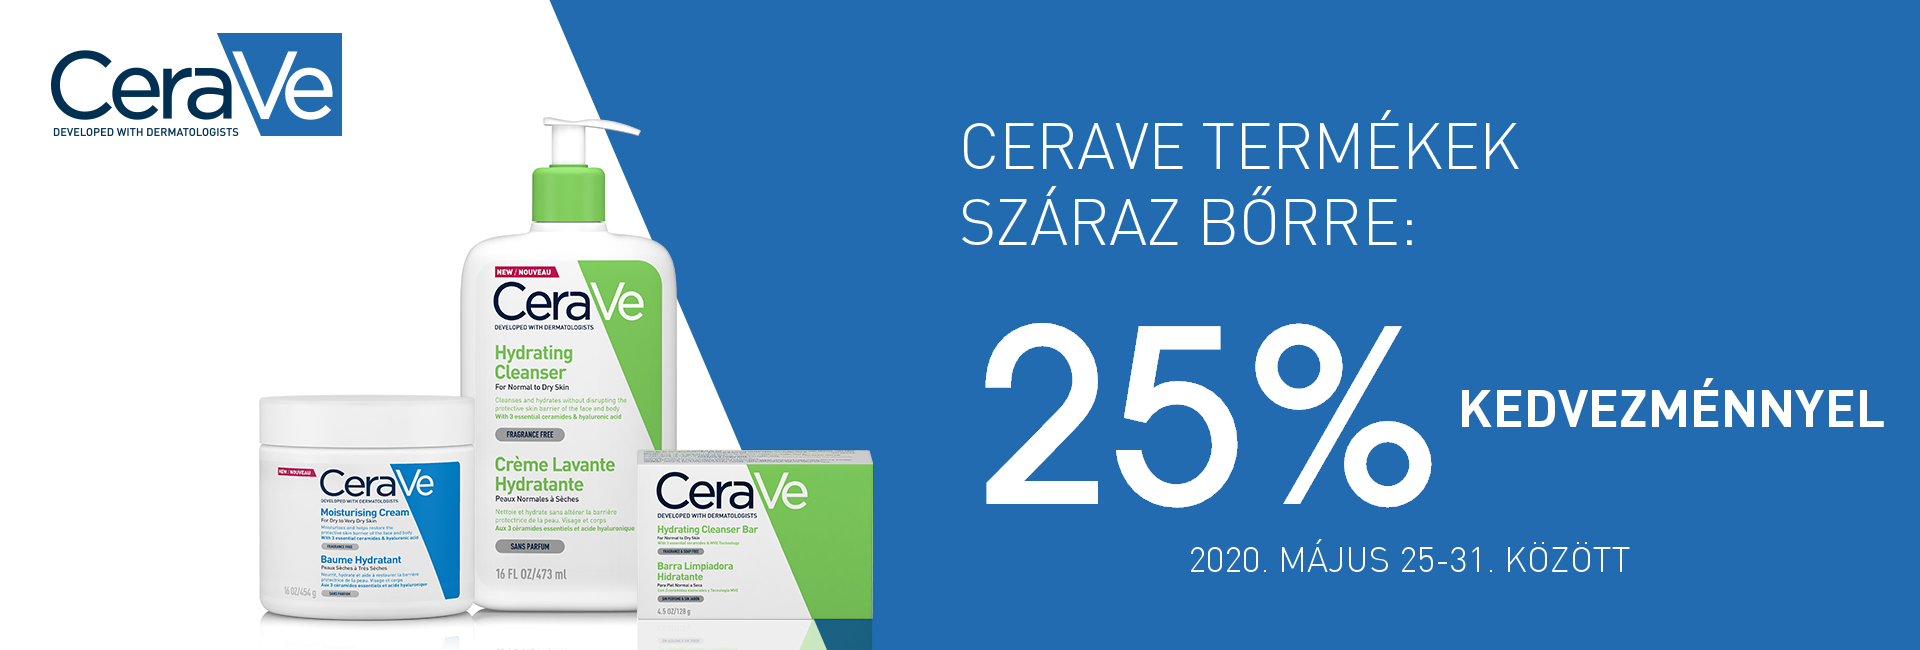 2020. május 25-31. között minden CeraVe terméket 25% kedvezménnyel kínálunk! 